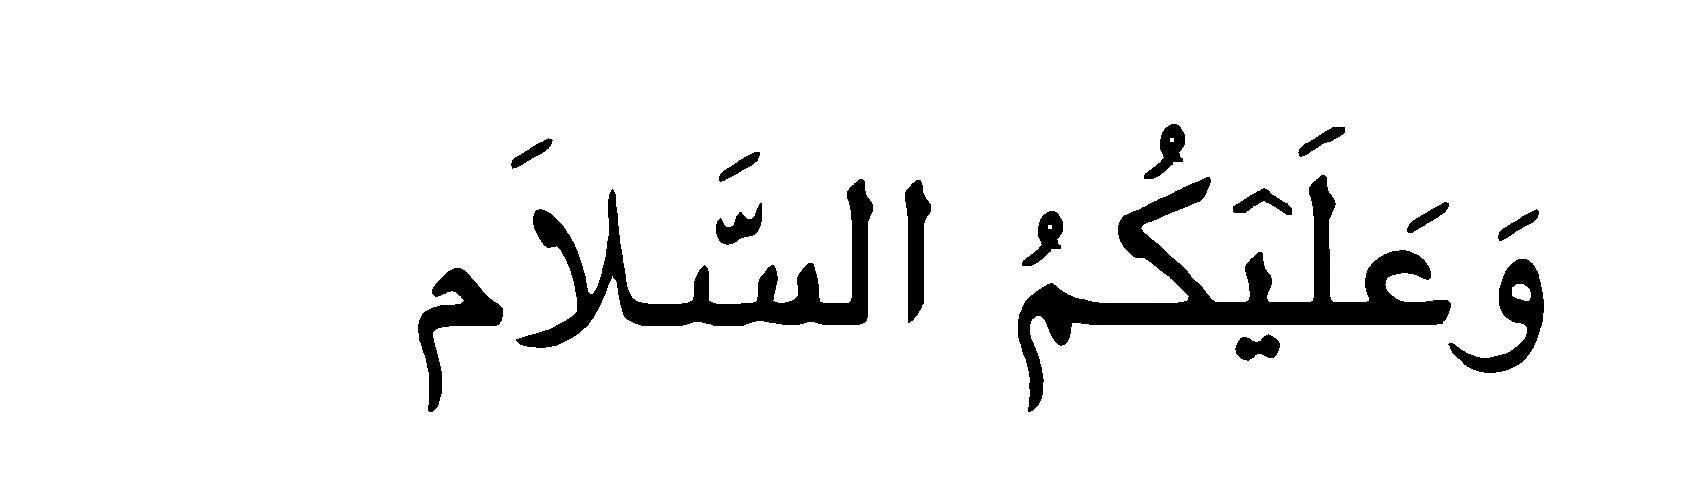 Ас саляму алейкум на арабском. Салям на арабском. Салам алейкум на арабском. Приветствие на арабском языке. АС саляму алейкум на арабском языке.